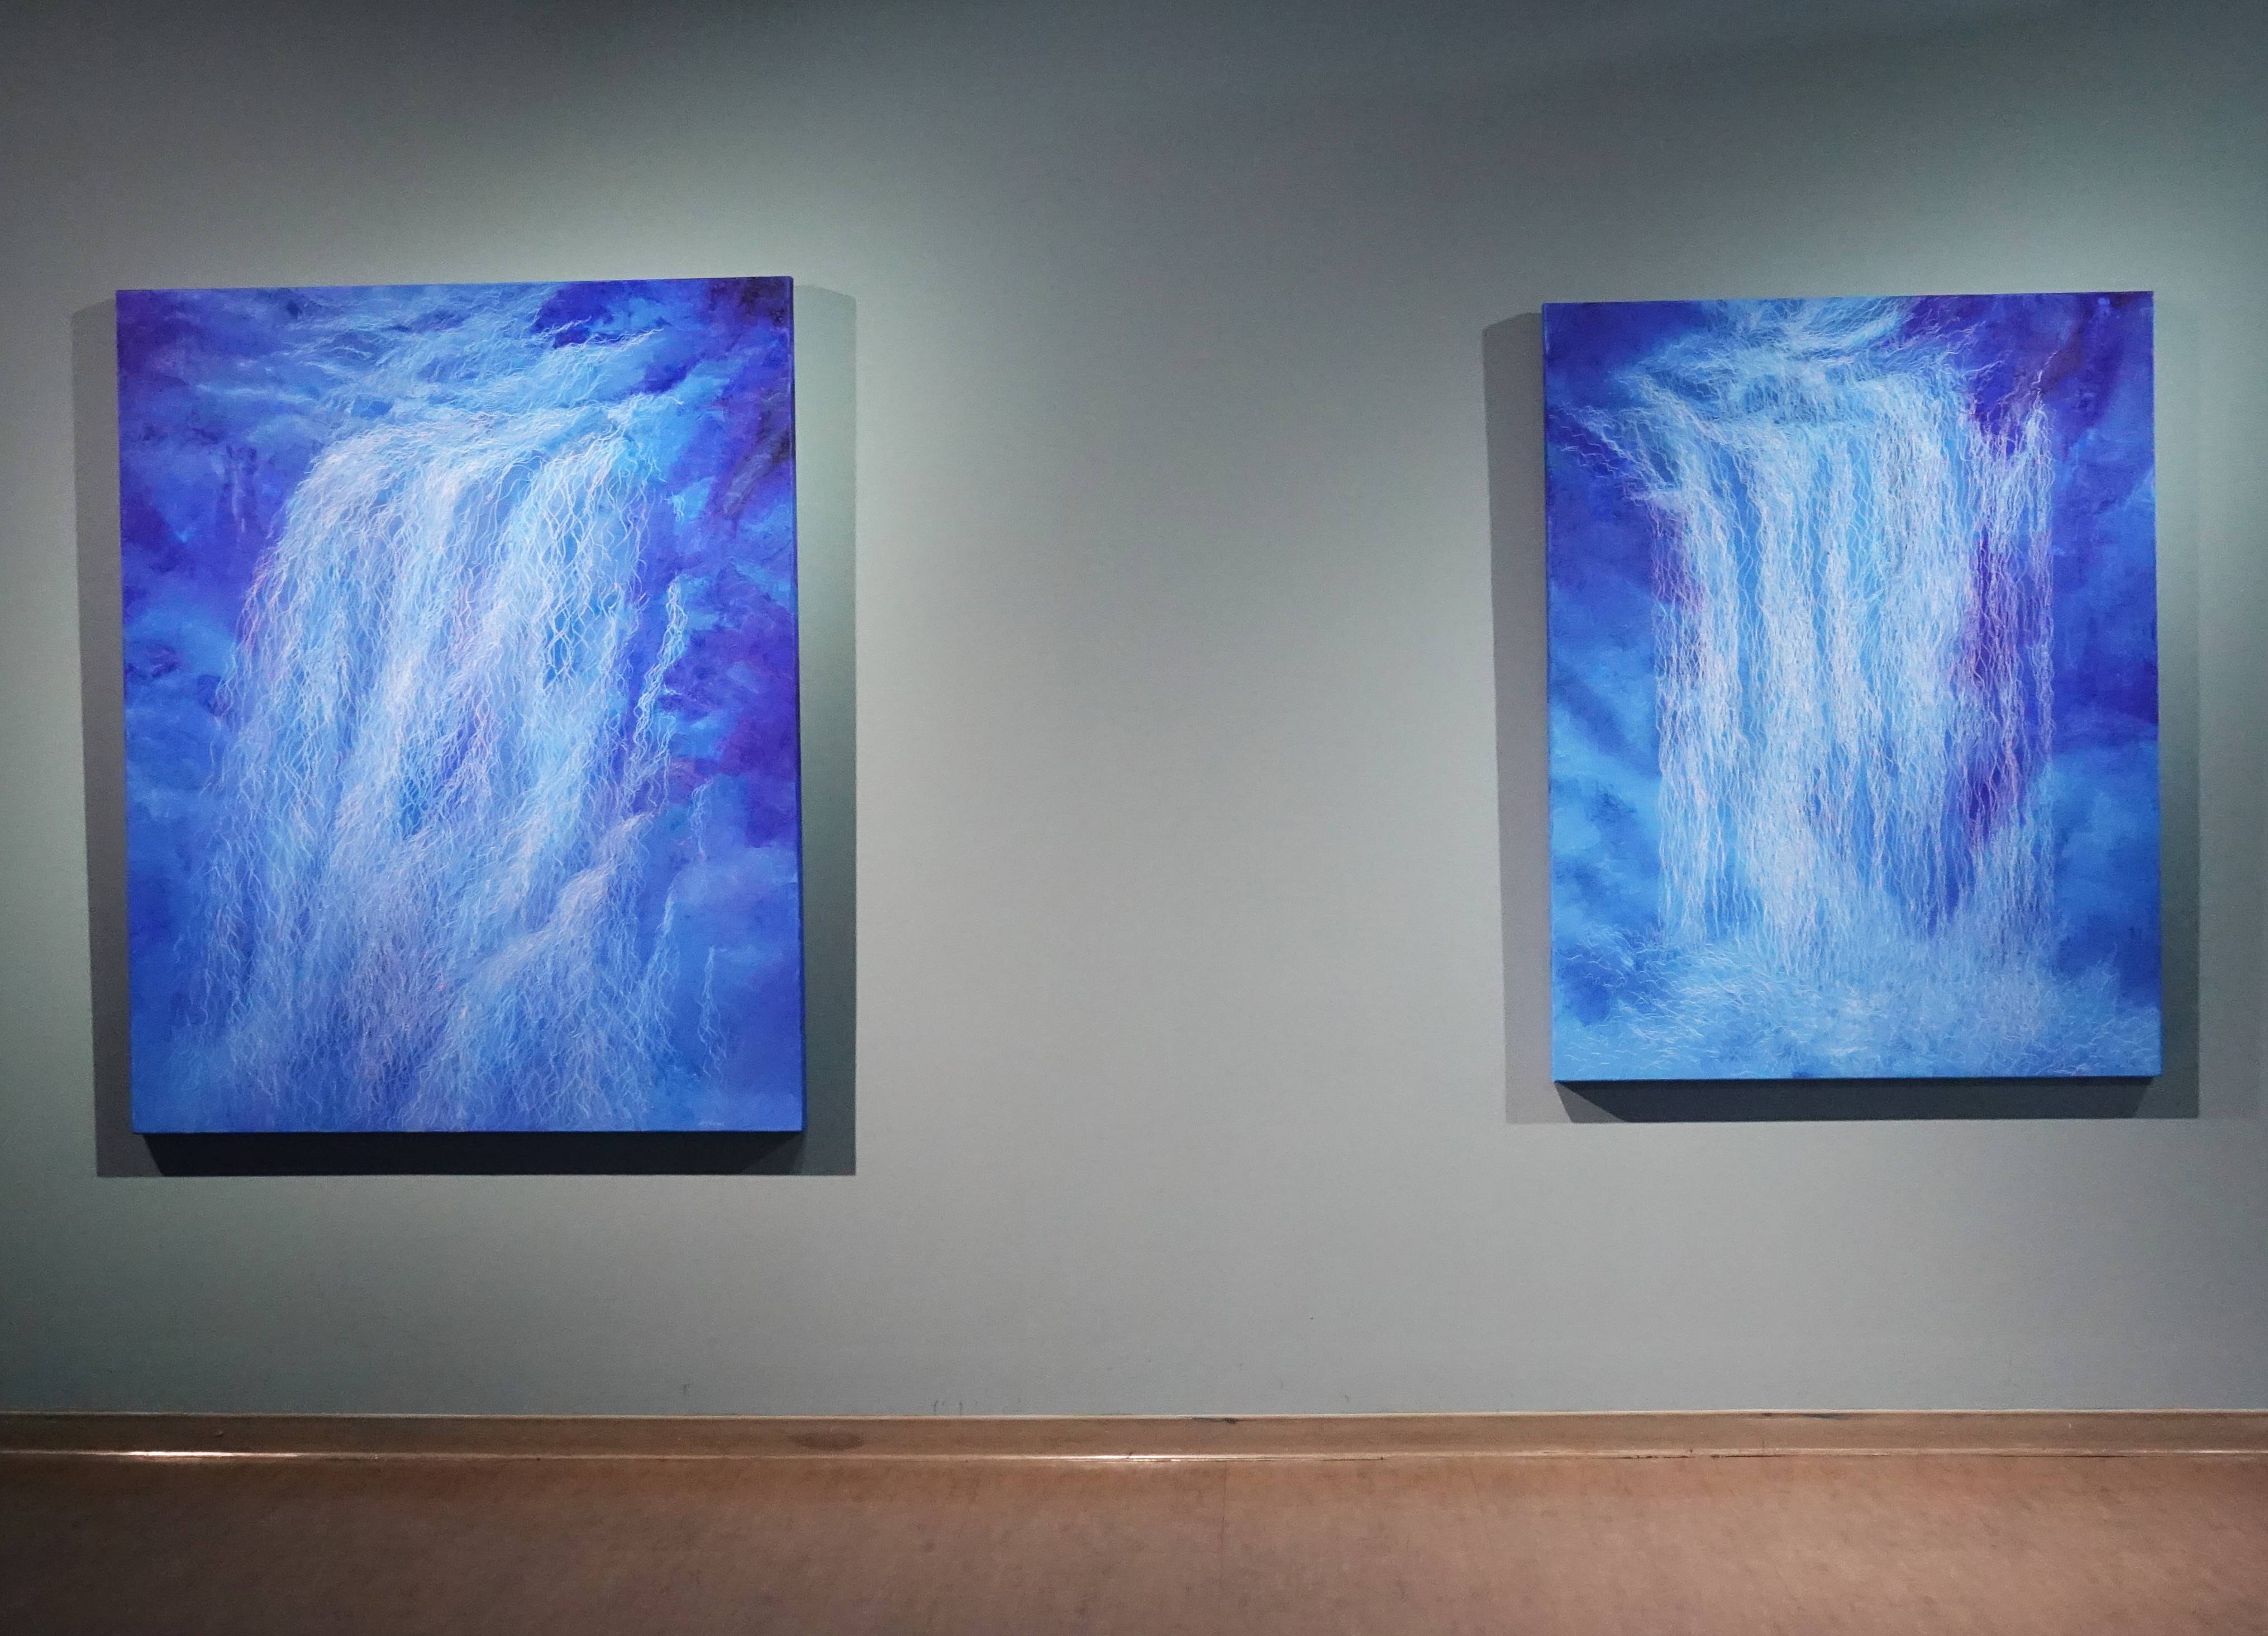 鄭麗雲，《瀑布VI》，145 x 112 cm，油彩、蔴布，2017(左)。 鄭麗雲，《瀑布V》，162 x 130 cm，油彩、蔴布，2017(右)。